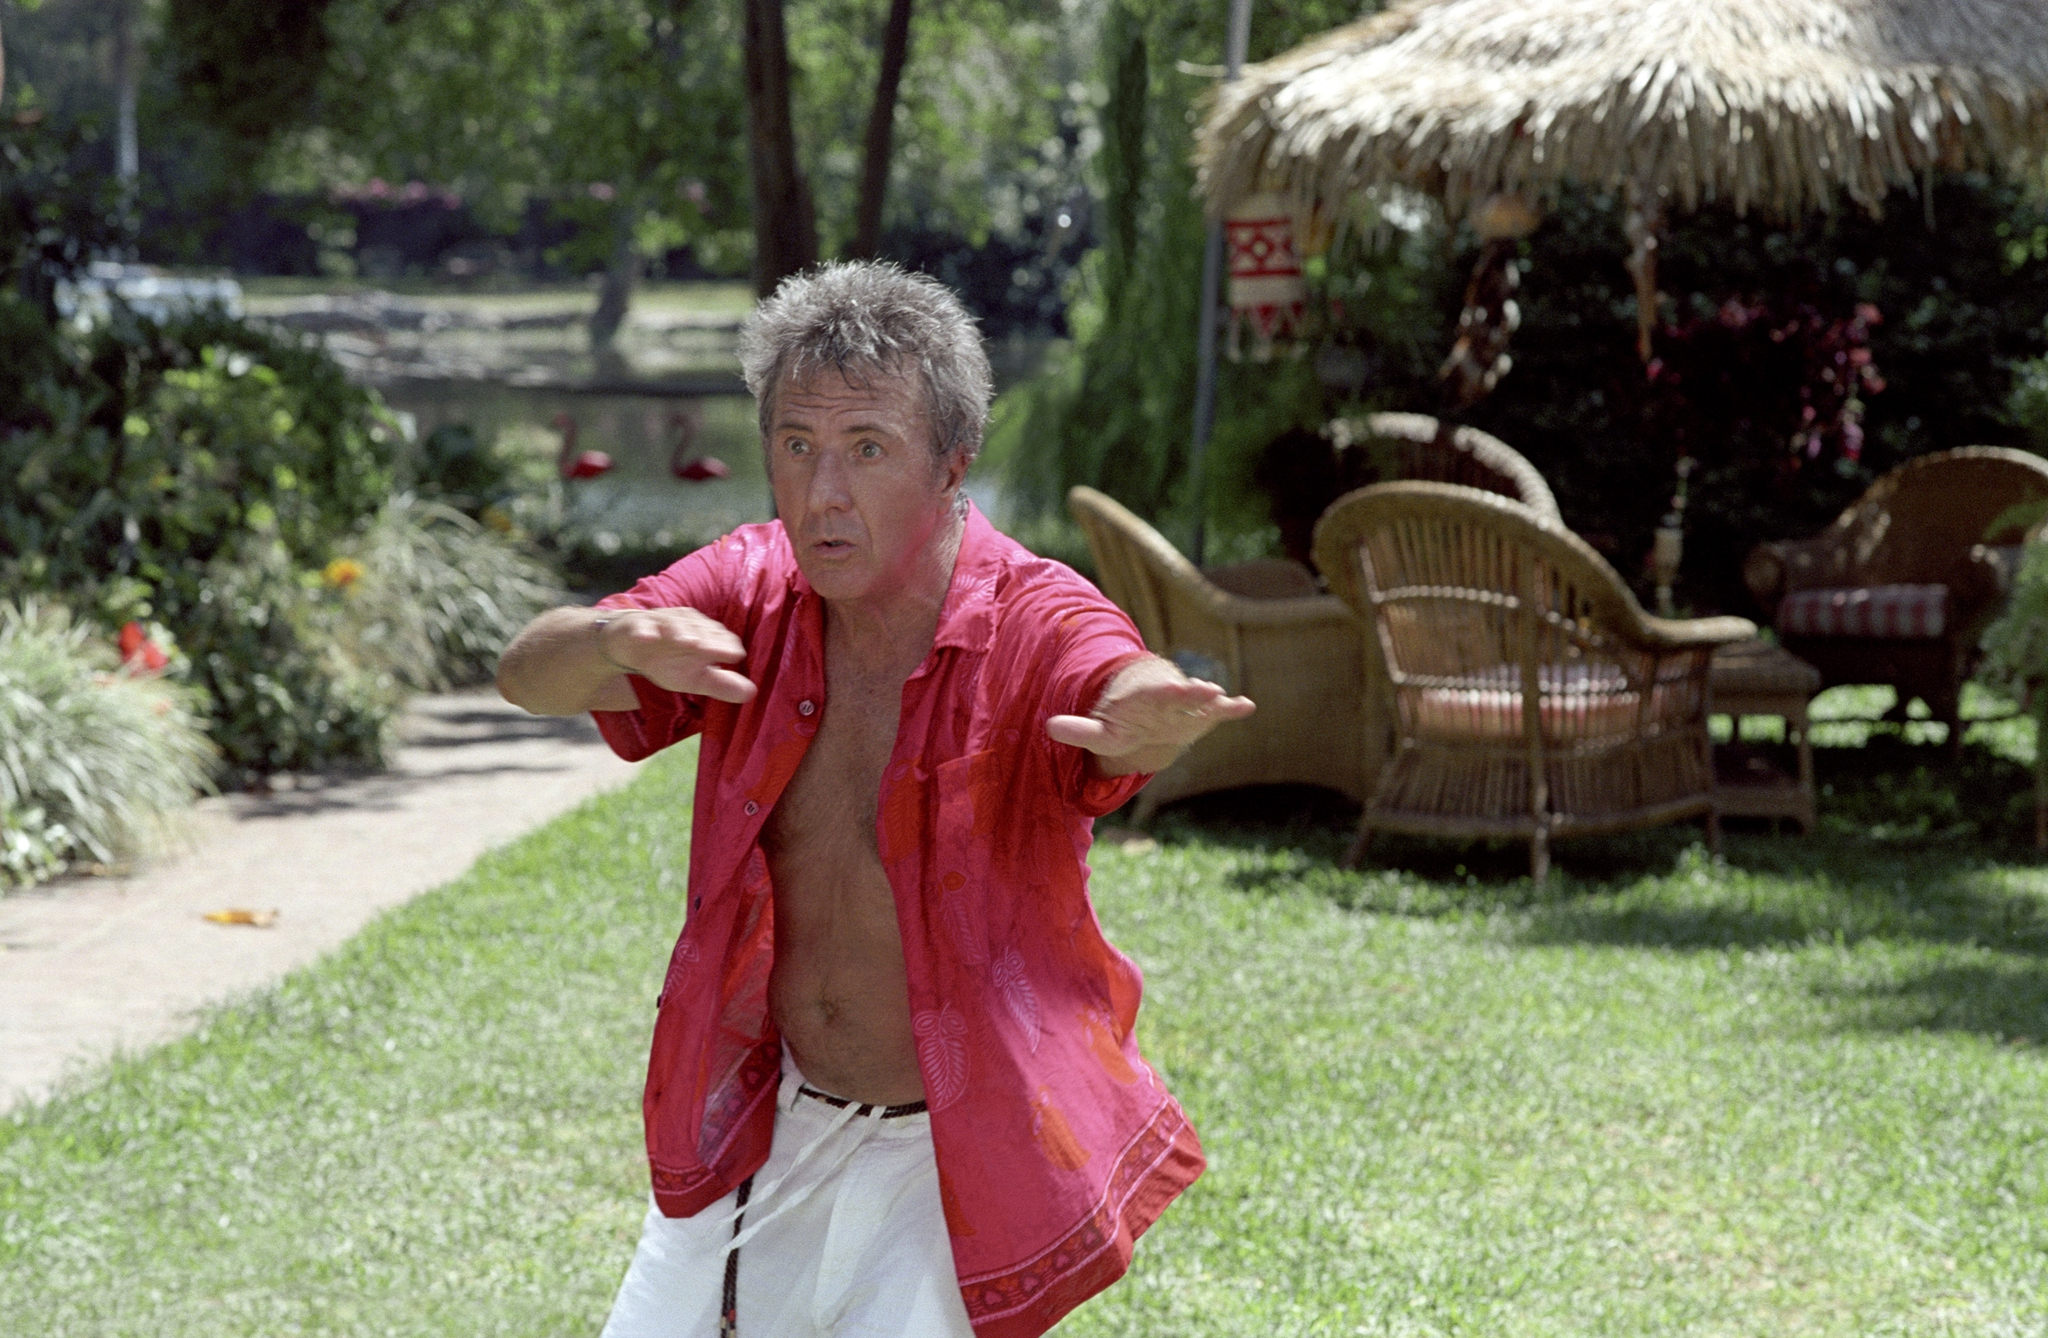 Still of Dustin Hoffman in Meet the Fockers (2004)